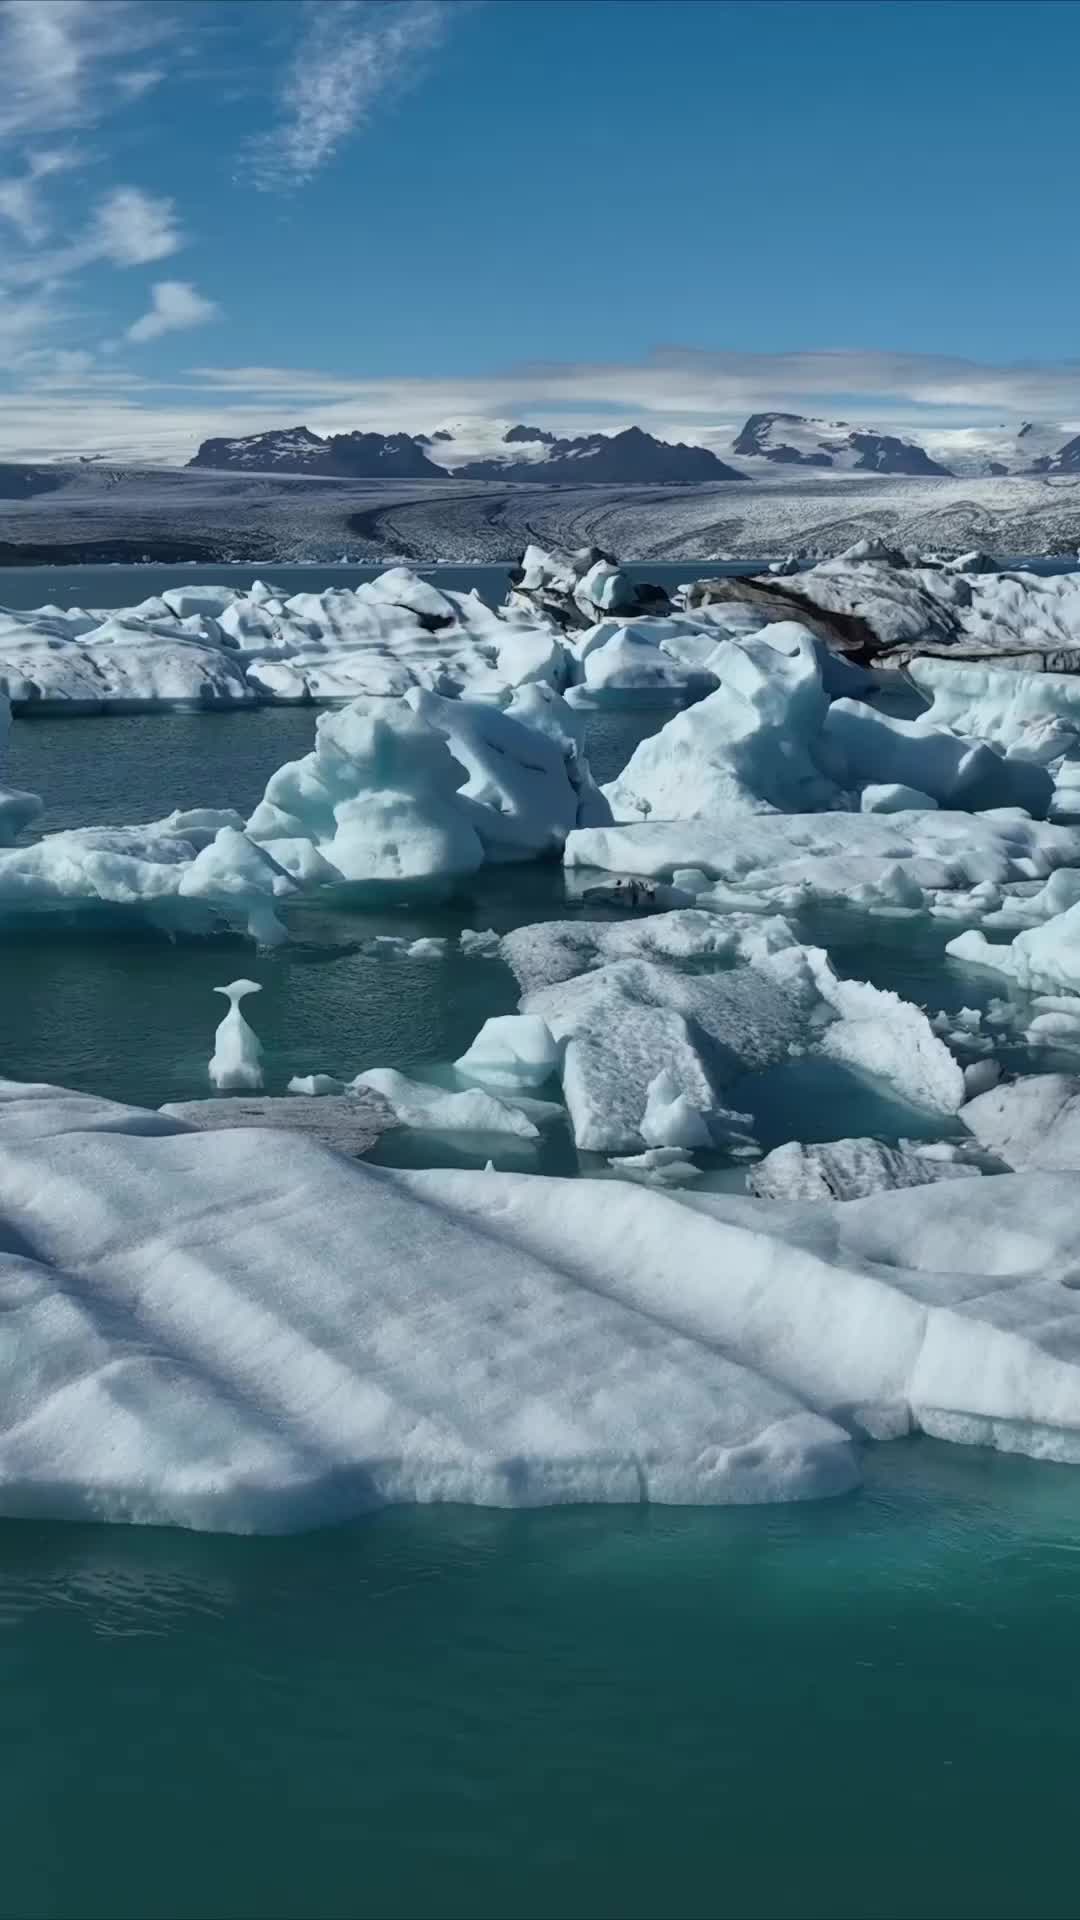 Discover Jokulsarlon Glacier Lagoon in Iceland